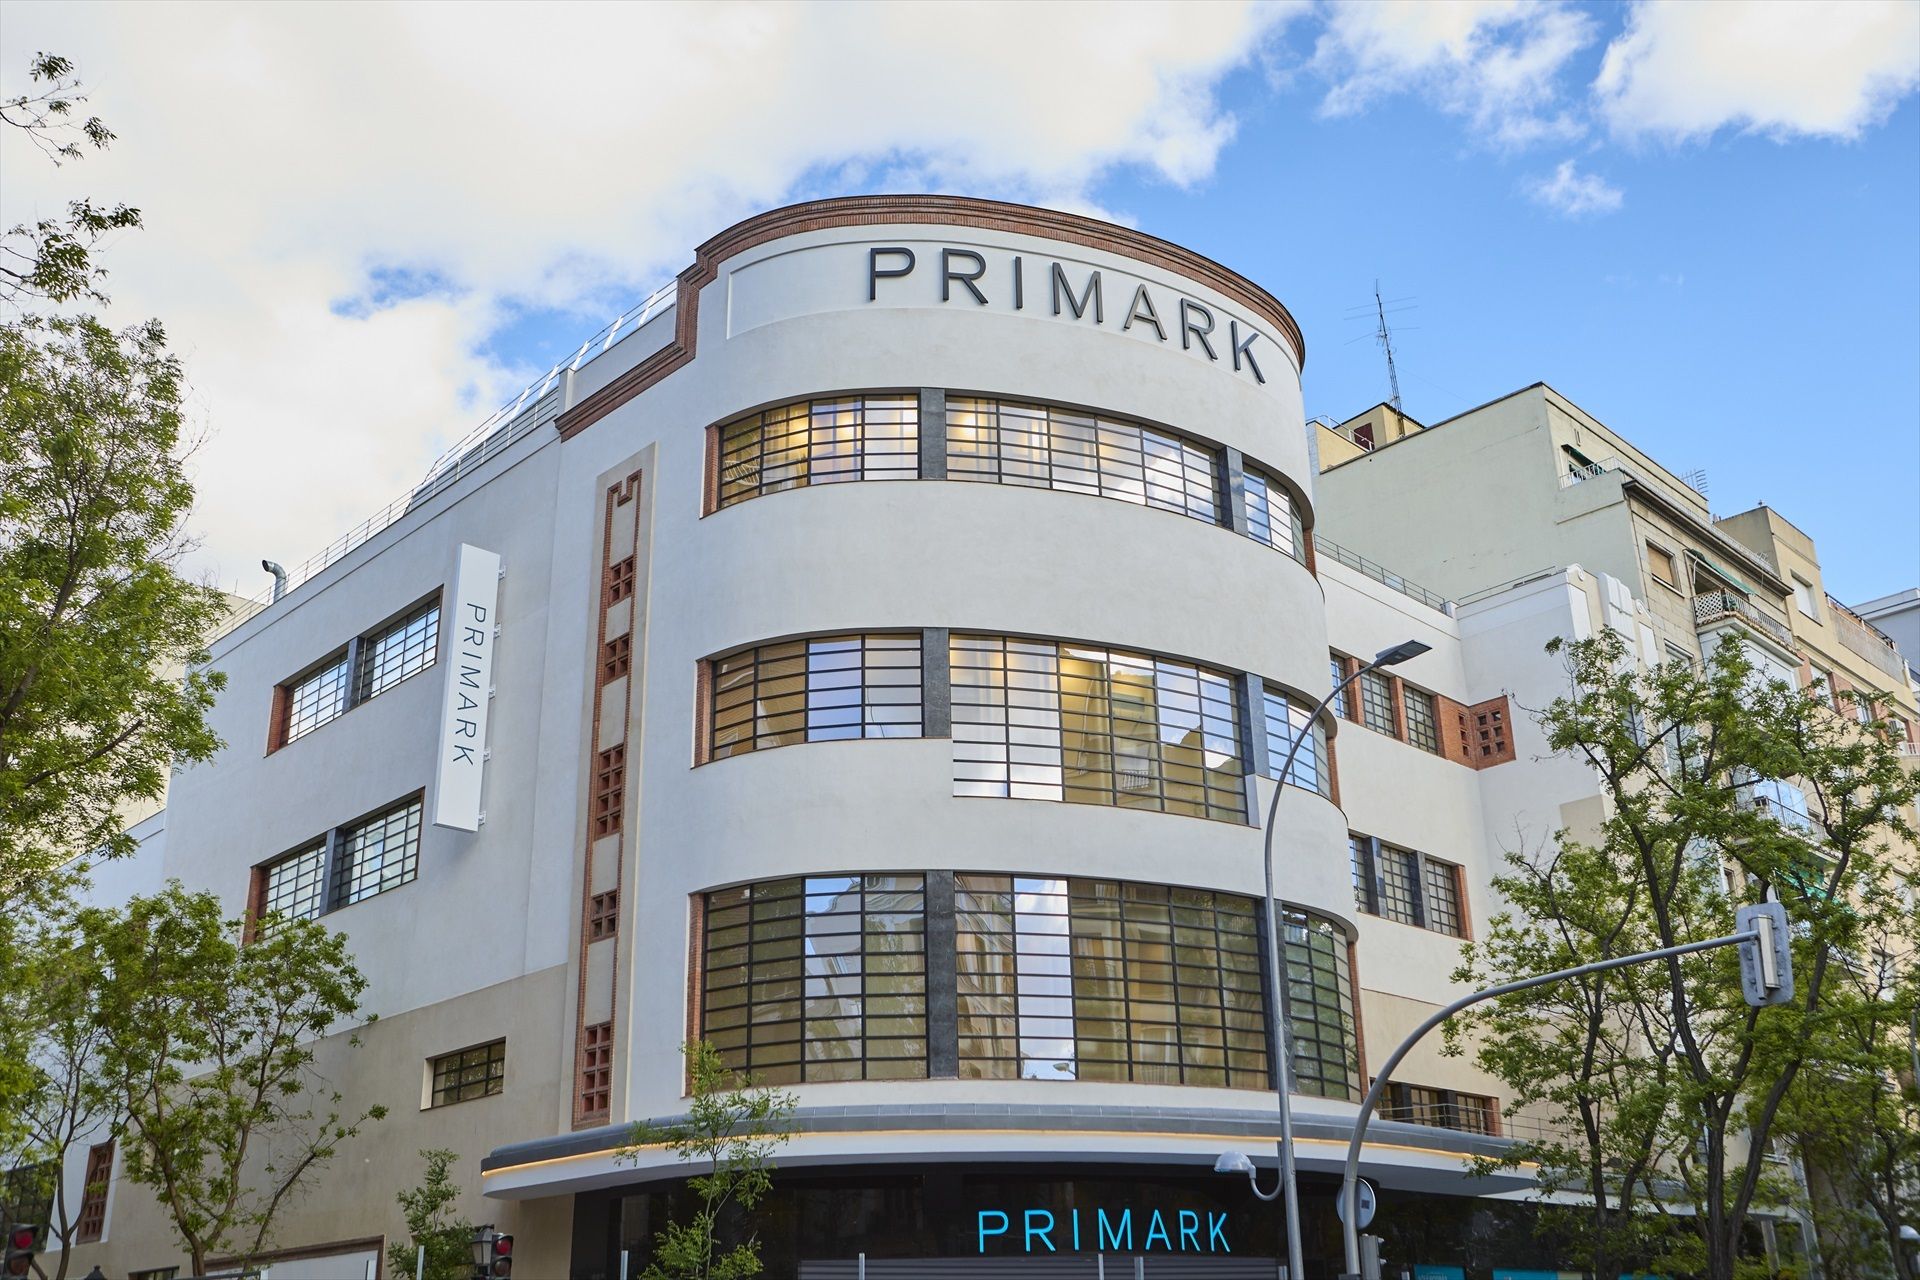 Así es el nuevo Primark que abrirá en mayo en Madrid, en pleno barrio de Salamanca (Europa Press)